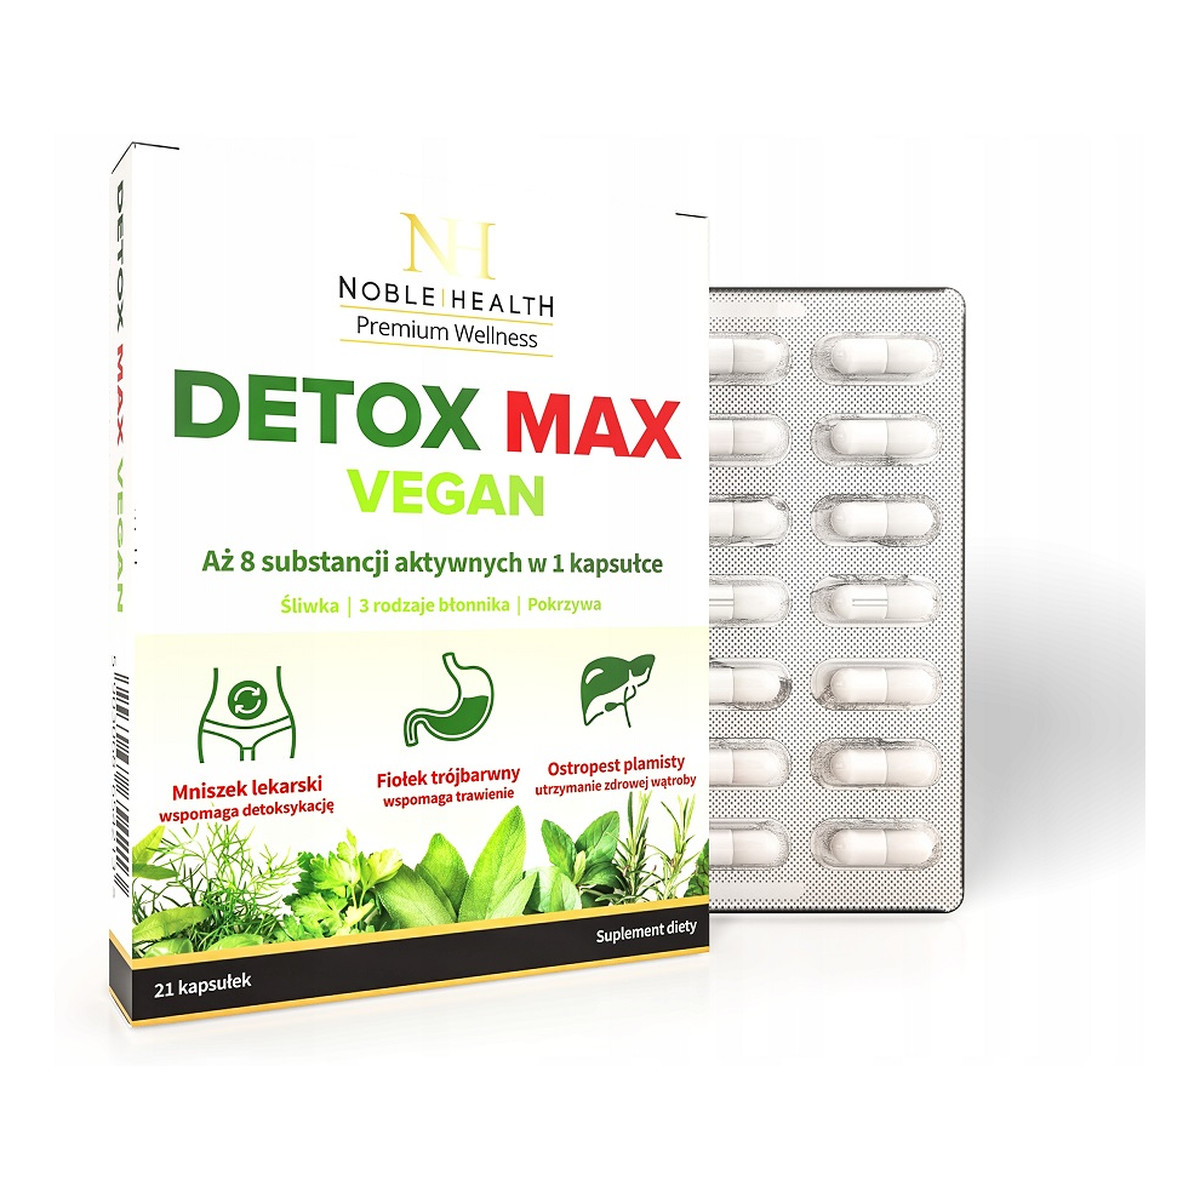 Noble Health Detox max vegan suplement diety wspomagający proces detoksykacji organizmu i prawidłowe funkcjonowanie układu trawiennego 21 kapsułek